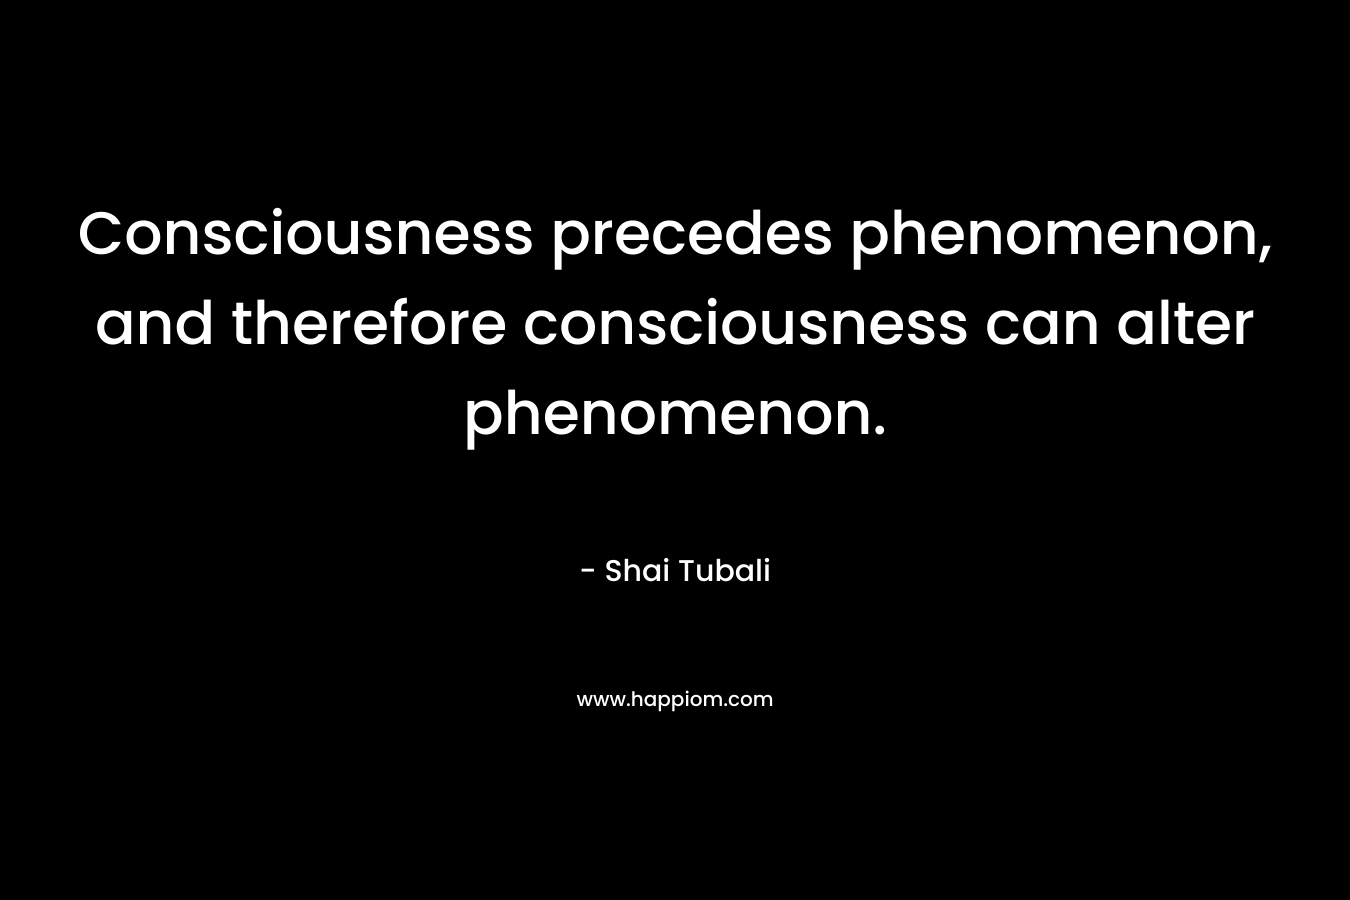 Consciousness precedes phenomenon, and therefore consciousness can alter phenomenon. – Shai Tubali